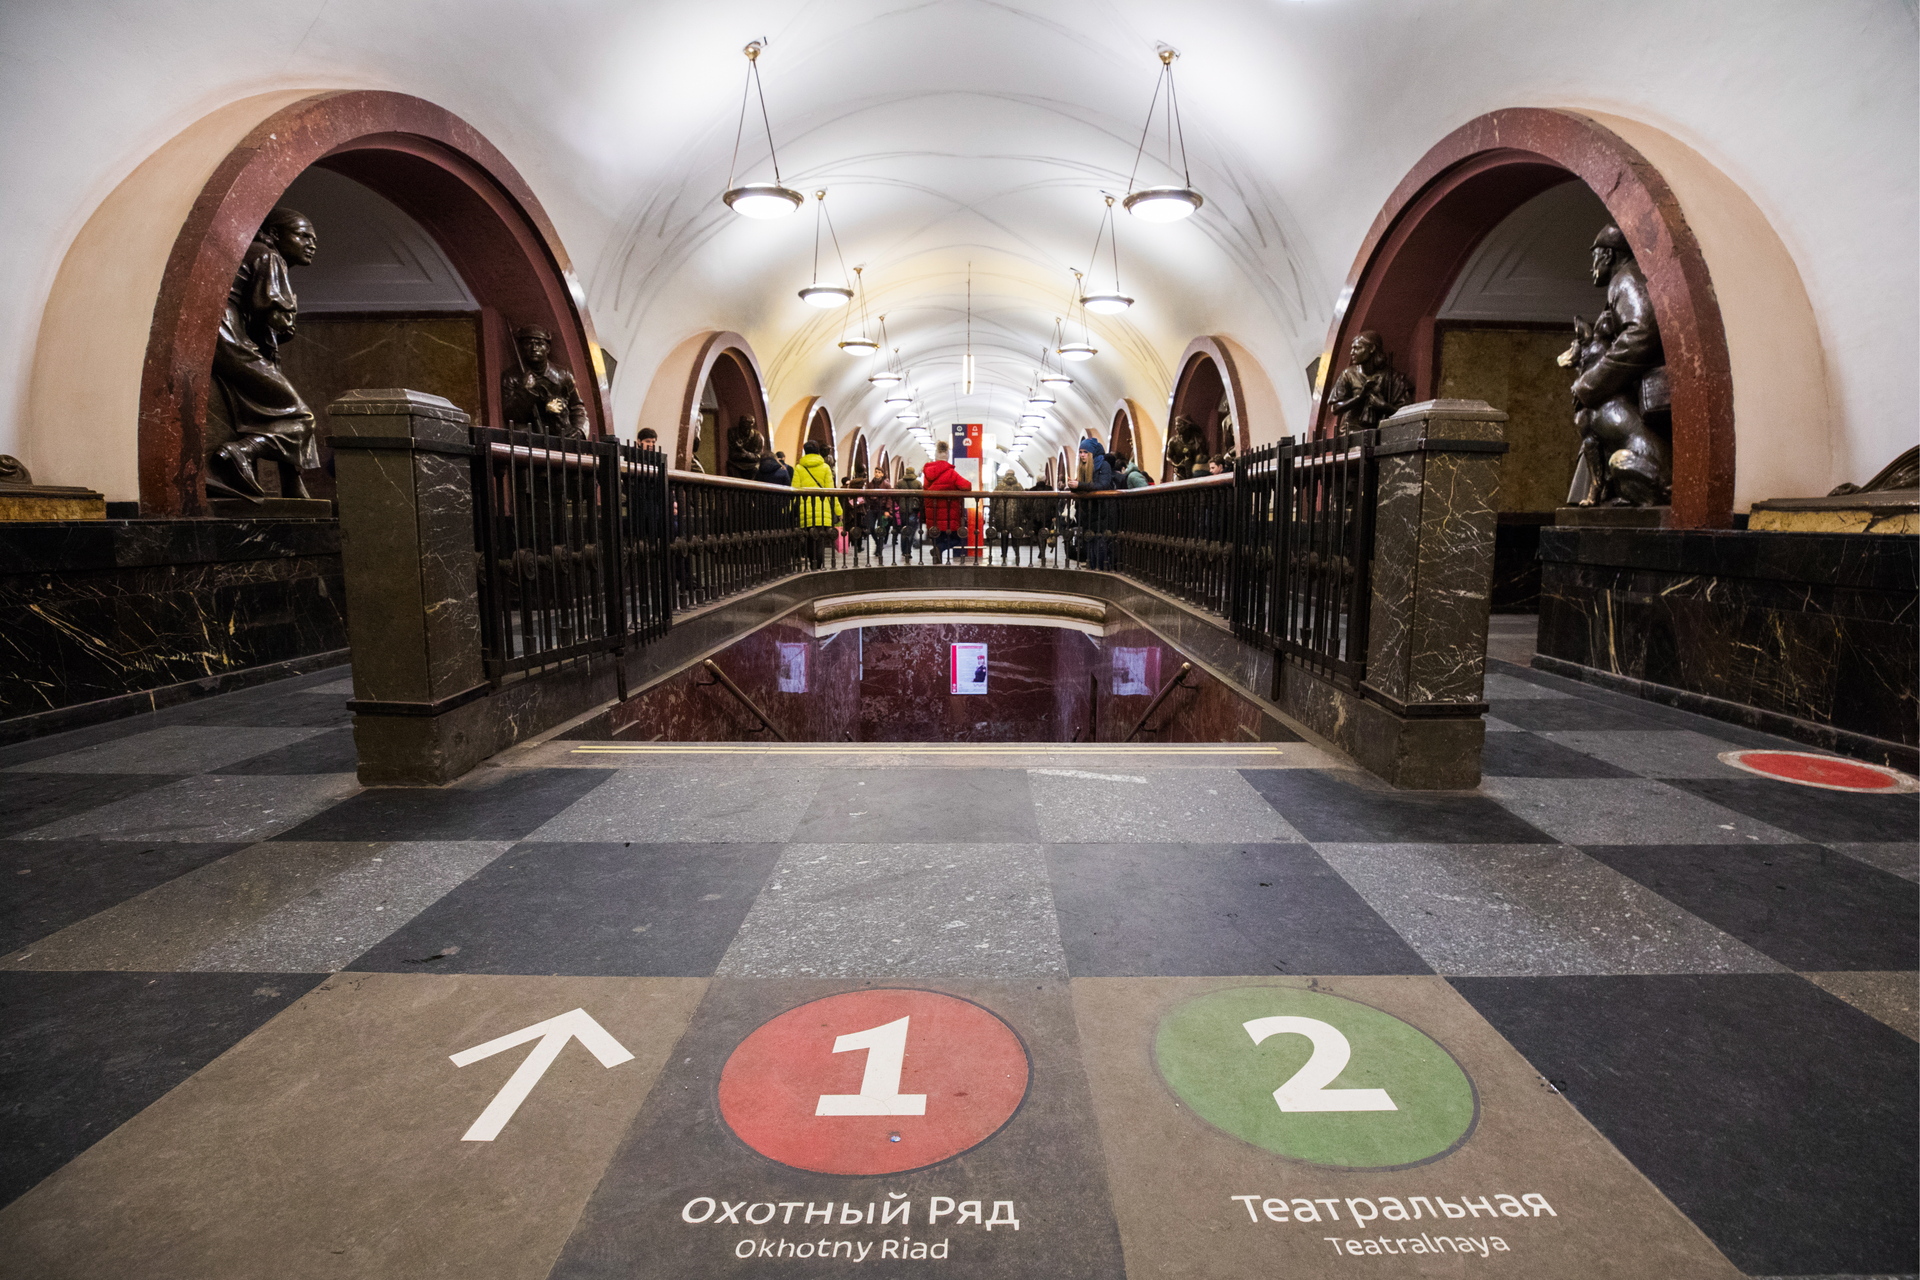 Раскрыта иерархия элементов навигации в столичном метро